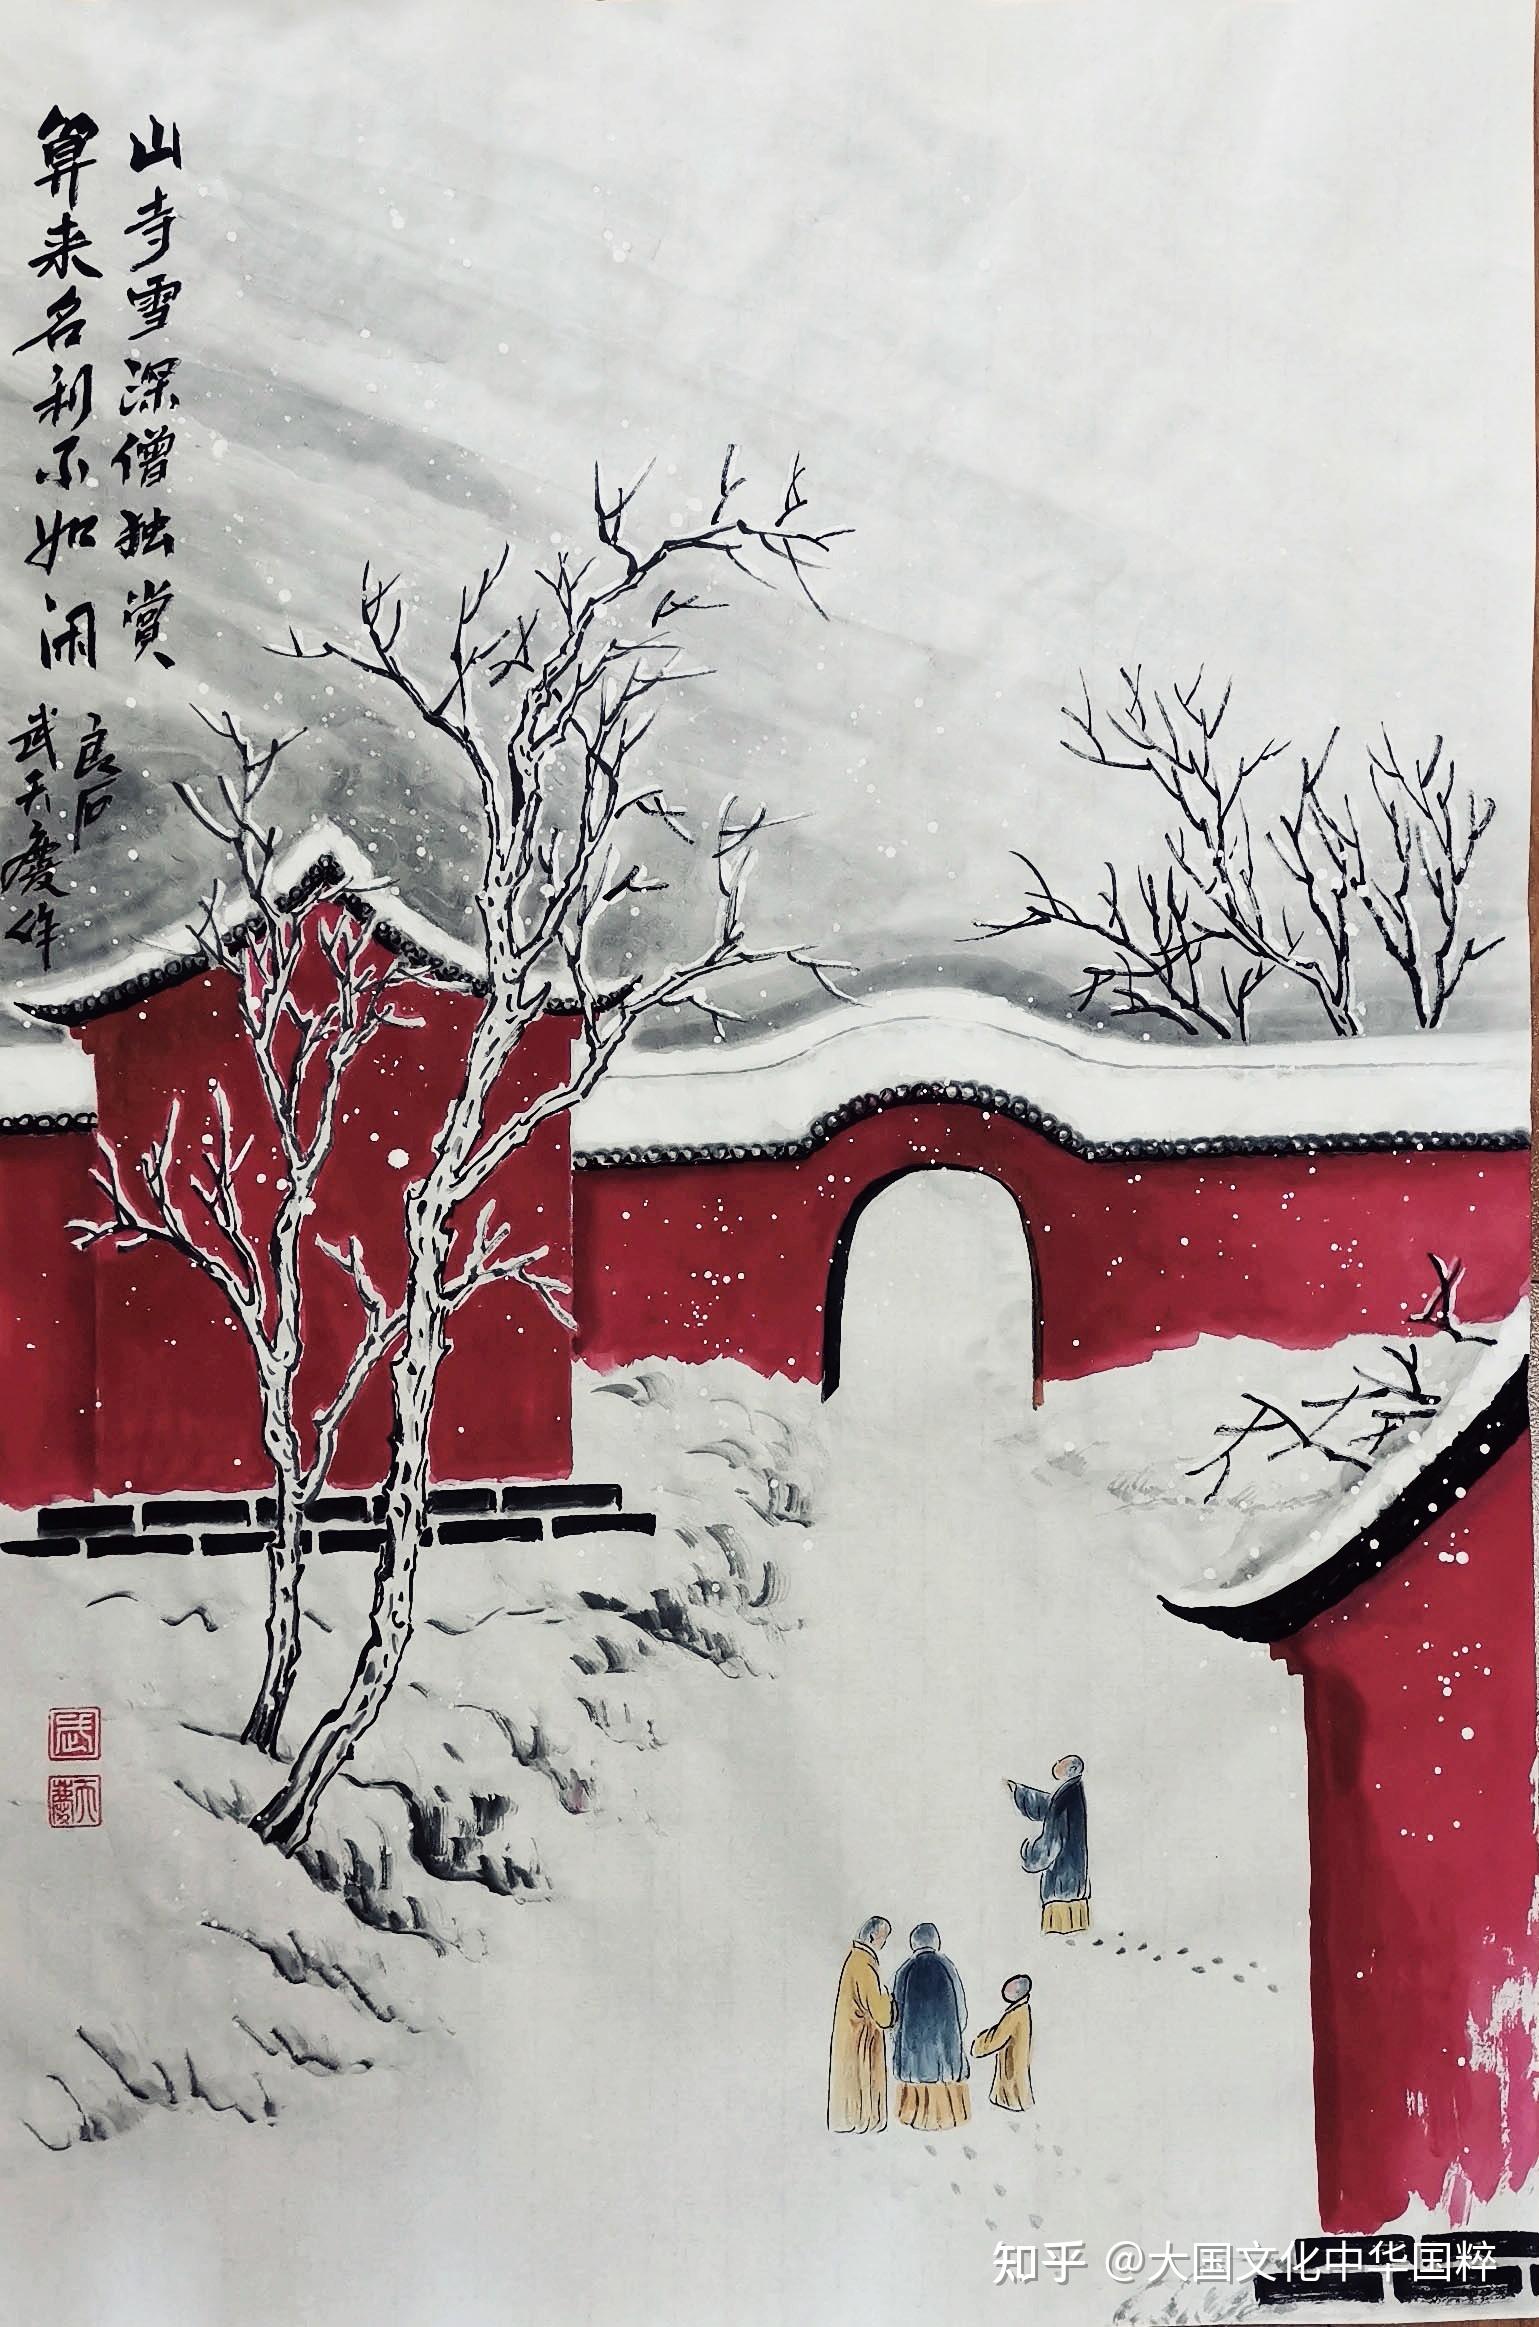 中国当代红墙寺院雪景创始人武天庆先生艺术鉴赏(武家雪景山水技法)